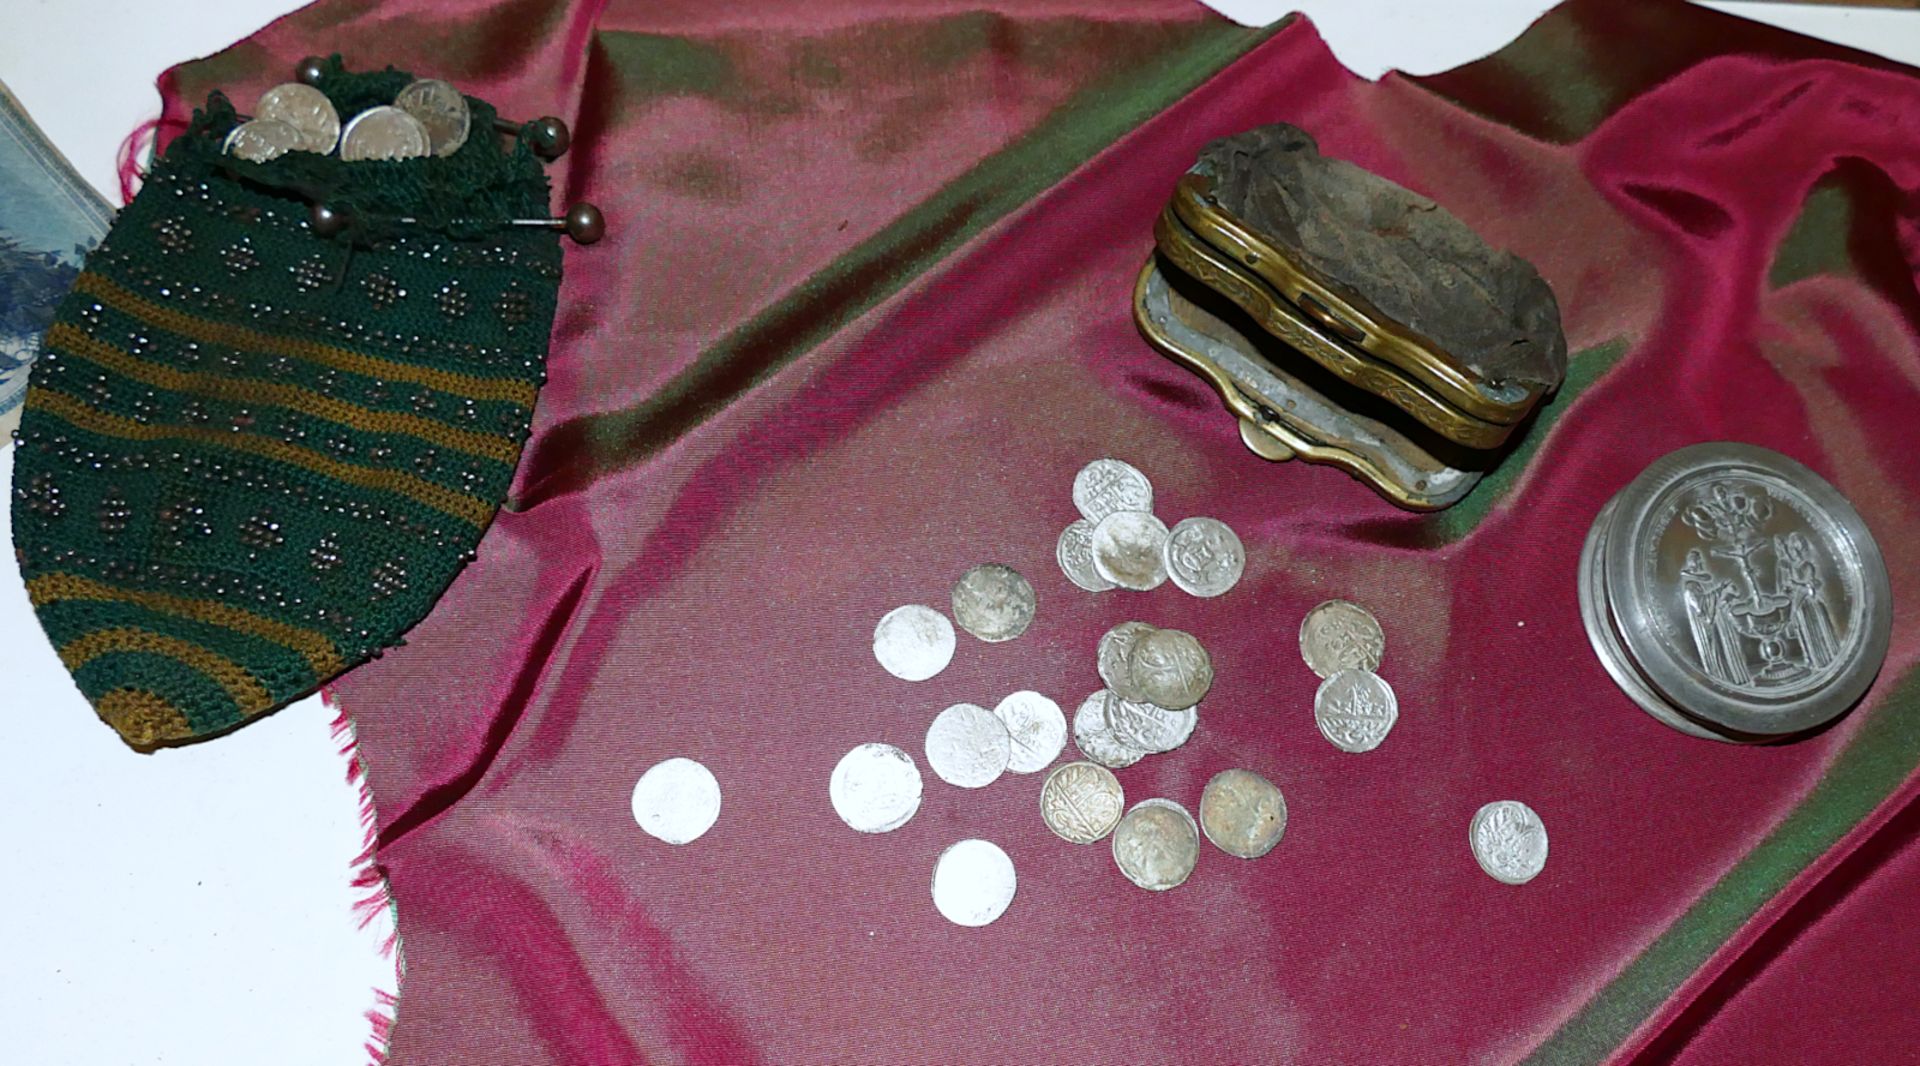 1 Schauvitrine mit Münzen und Scheinen, z.T. wohl 16.-20. Jh. (§ 86 / § 86 A StGB) - Image 2 of 3